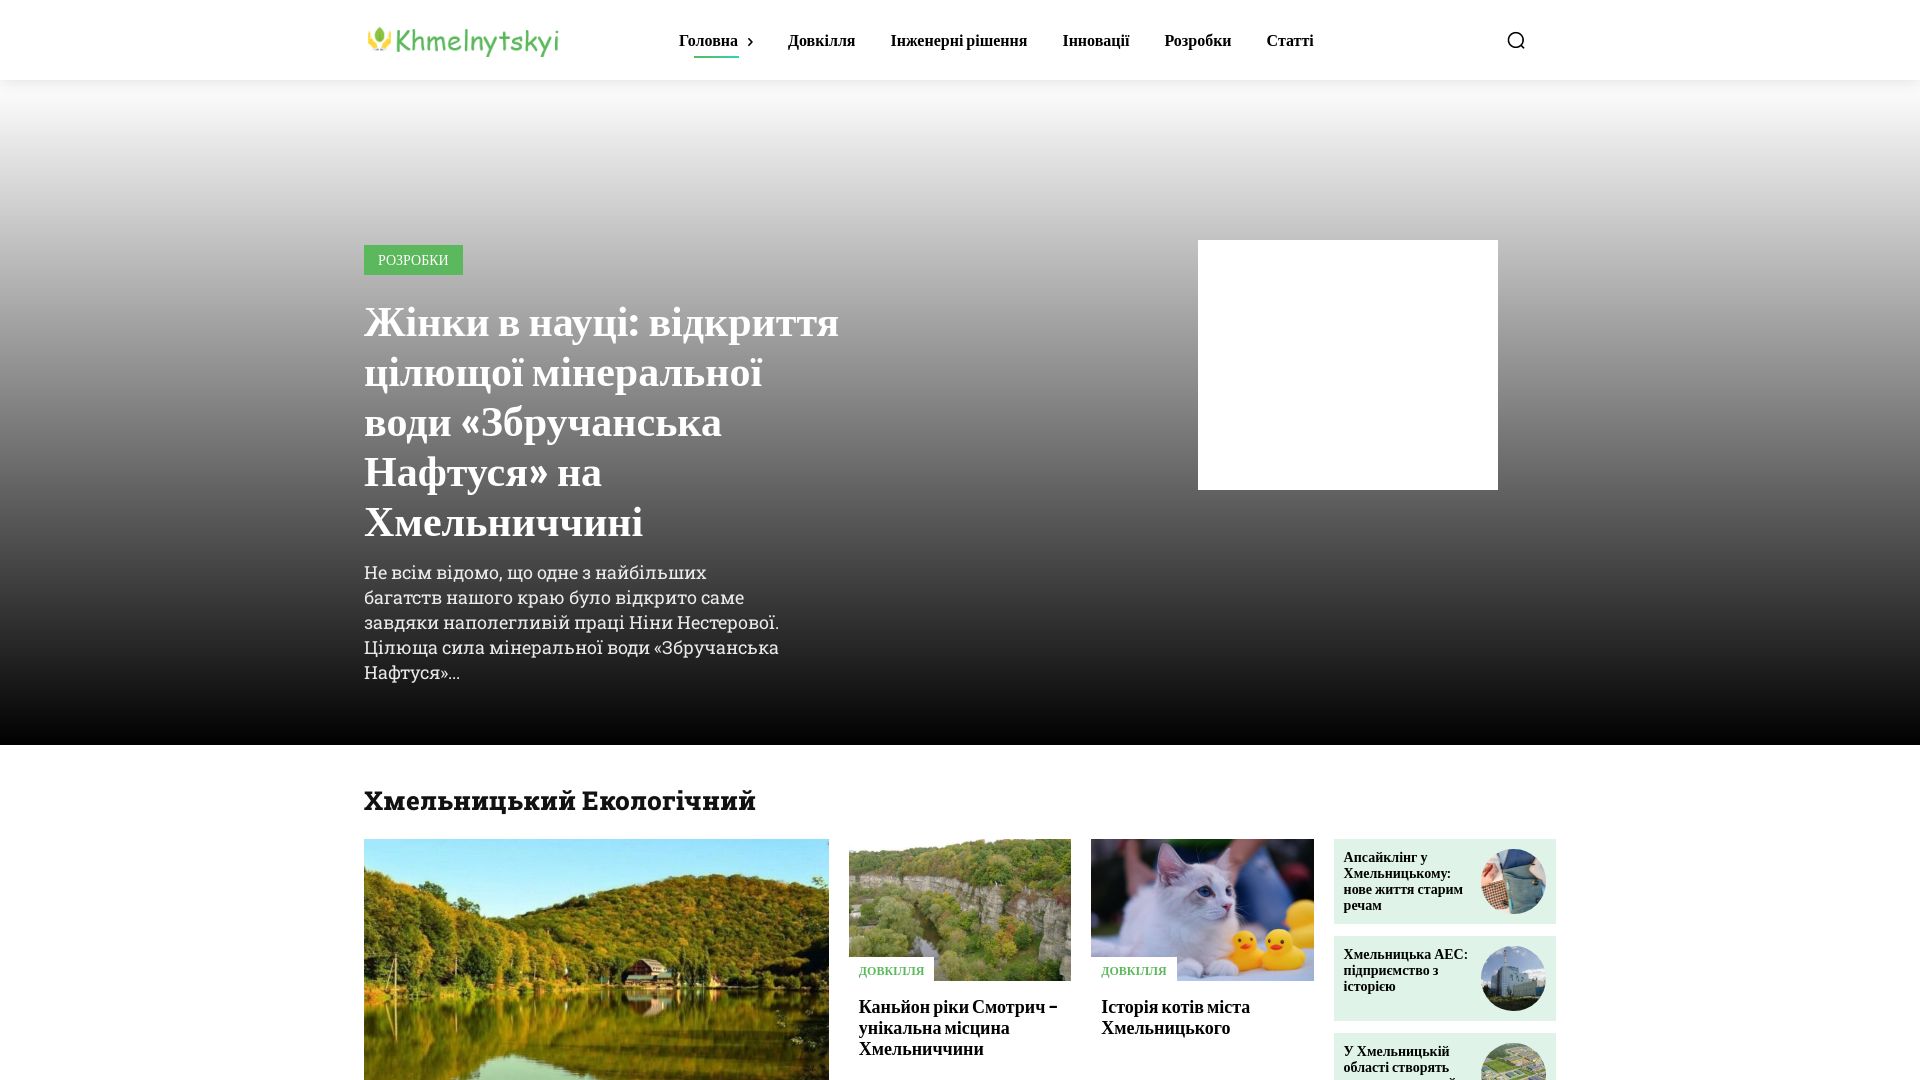 Estado web khmelnytskyi.name está   ONLINE